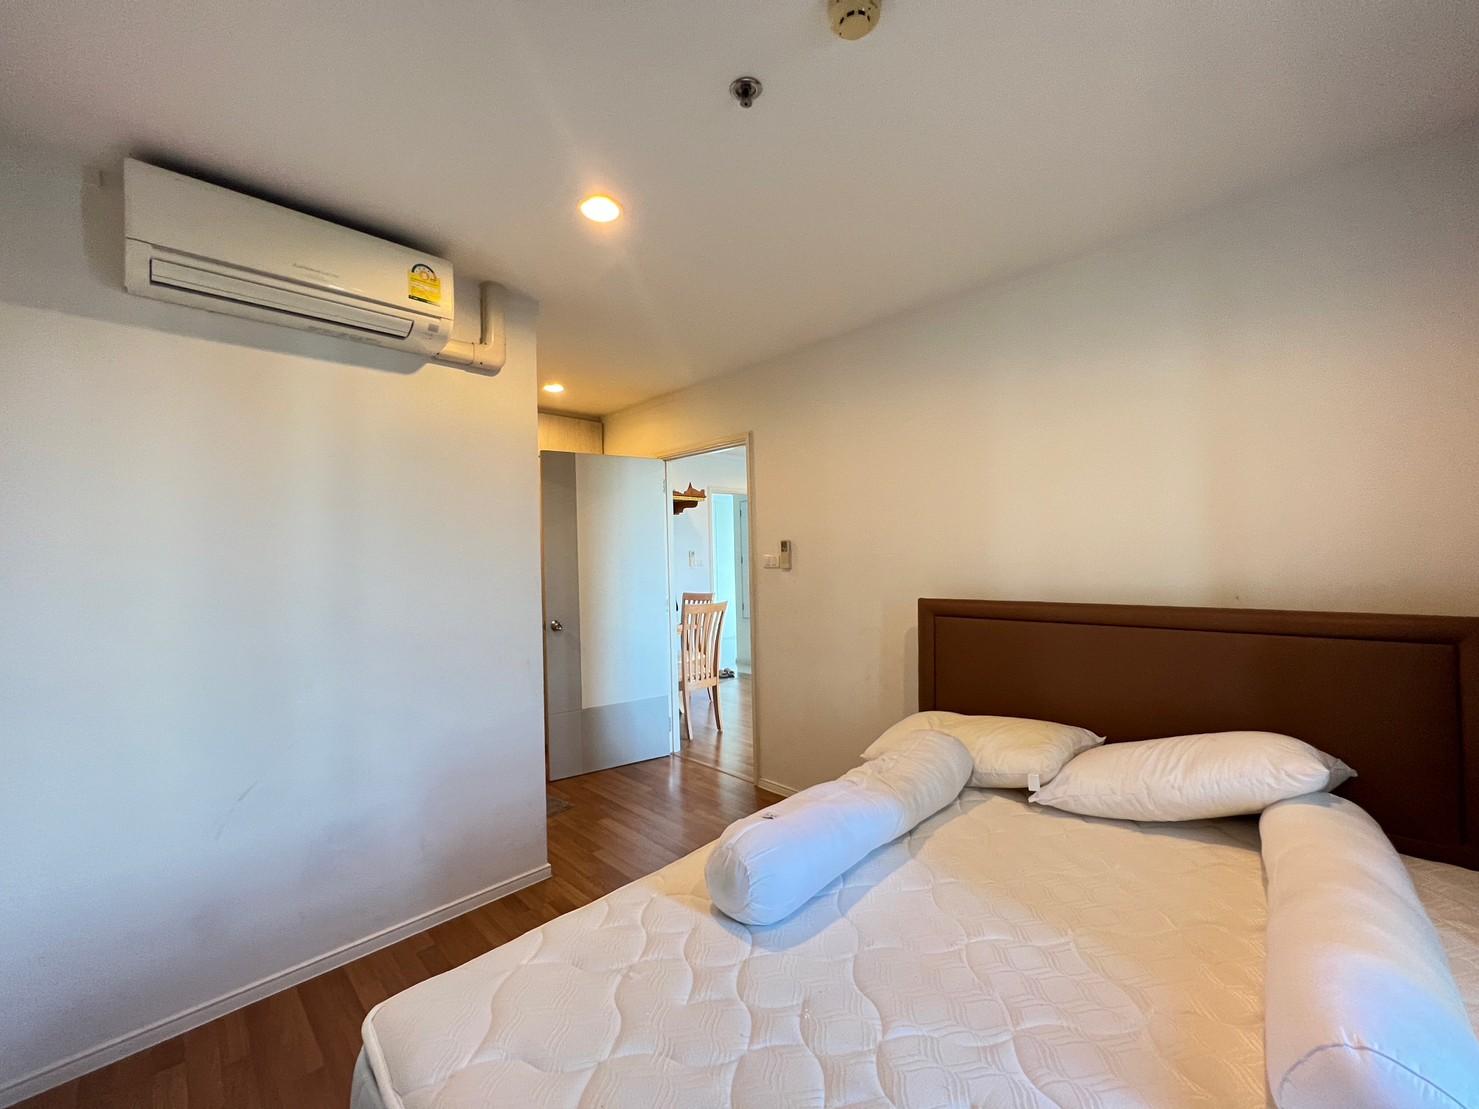 เช่าคอนโด ลุมพินี เพลส สุขสวัสดิ์ - พระราม2 คอนโดมิเนียม - Condo Rental Lumpini Place Suksawat - Rama2 condominium - 2645019